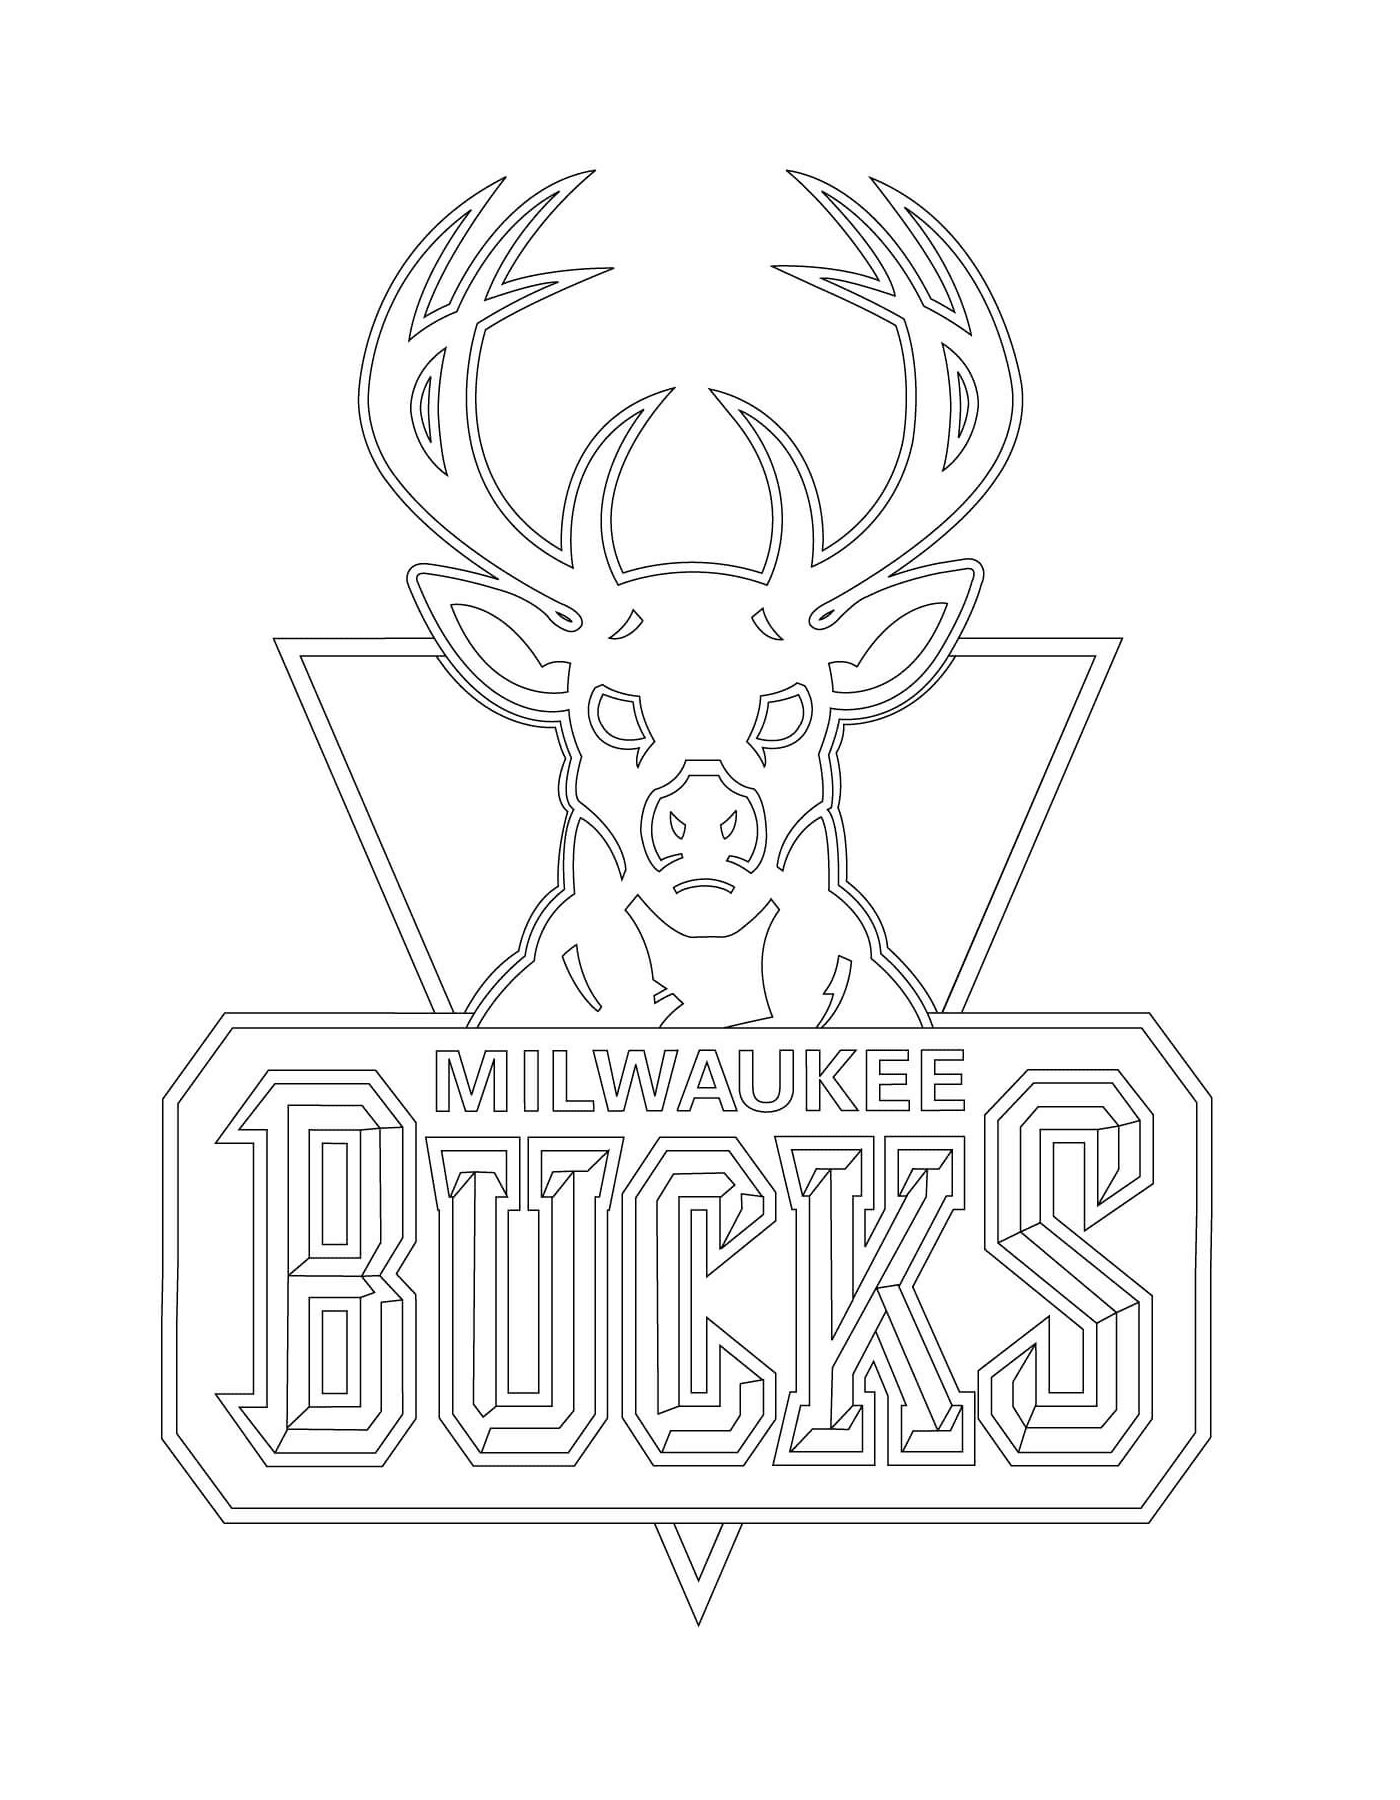   Le logo des Milwaukee Bucks de la NBA 